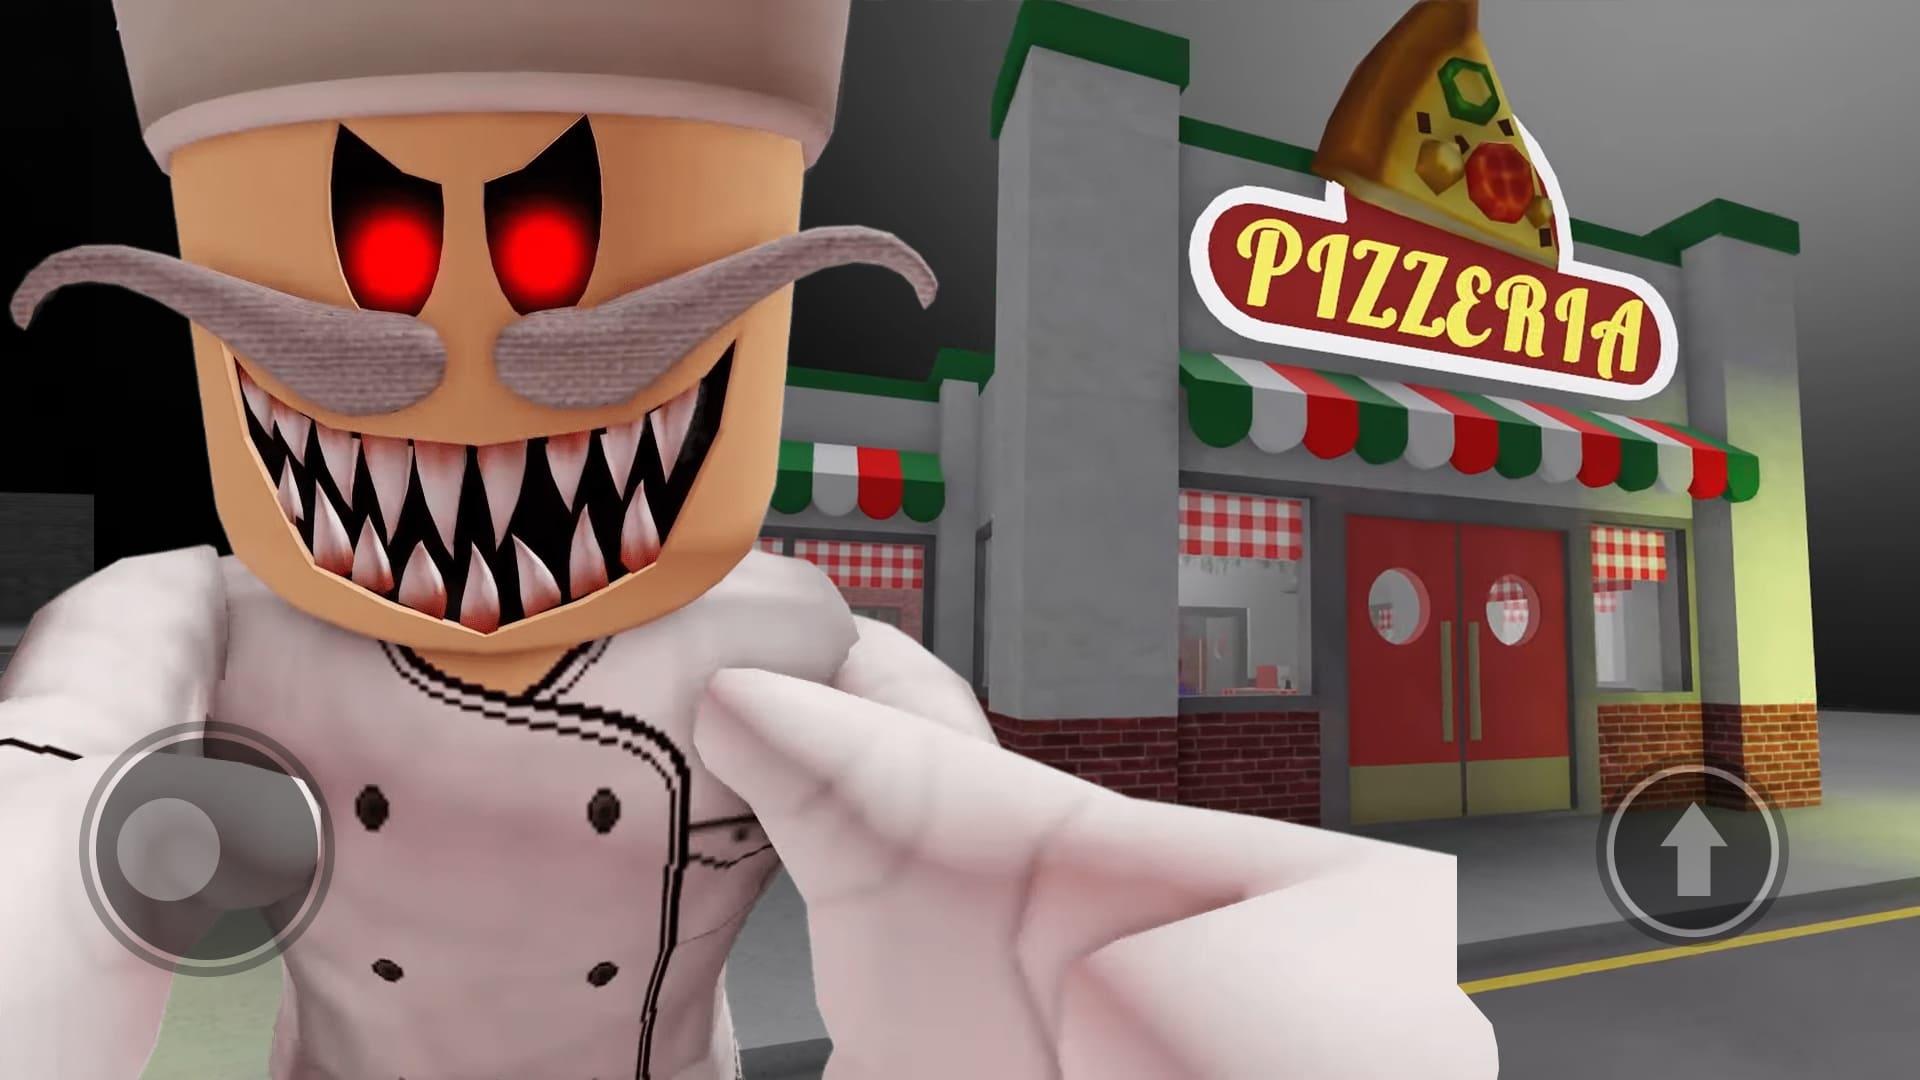 Escape Papa Pizza Pizzeria in Roblox Game